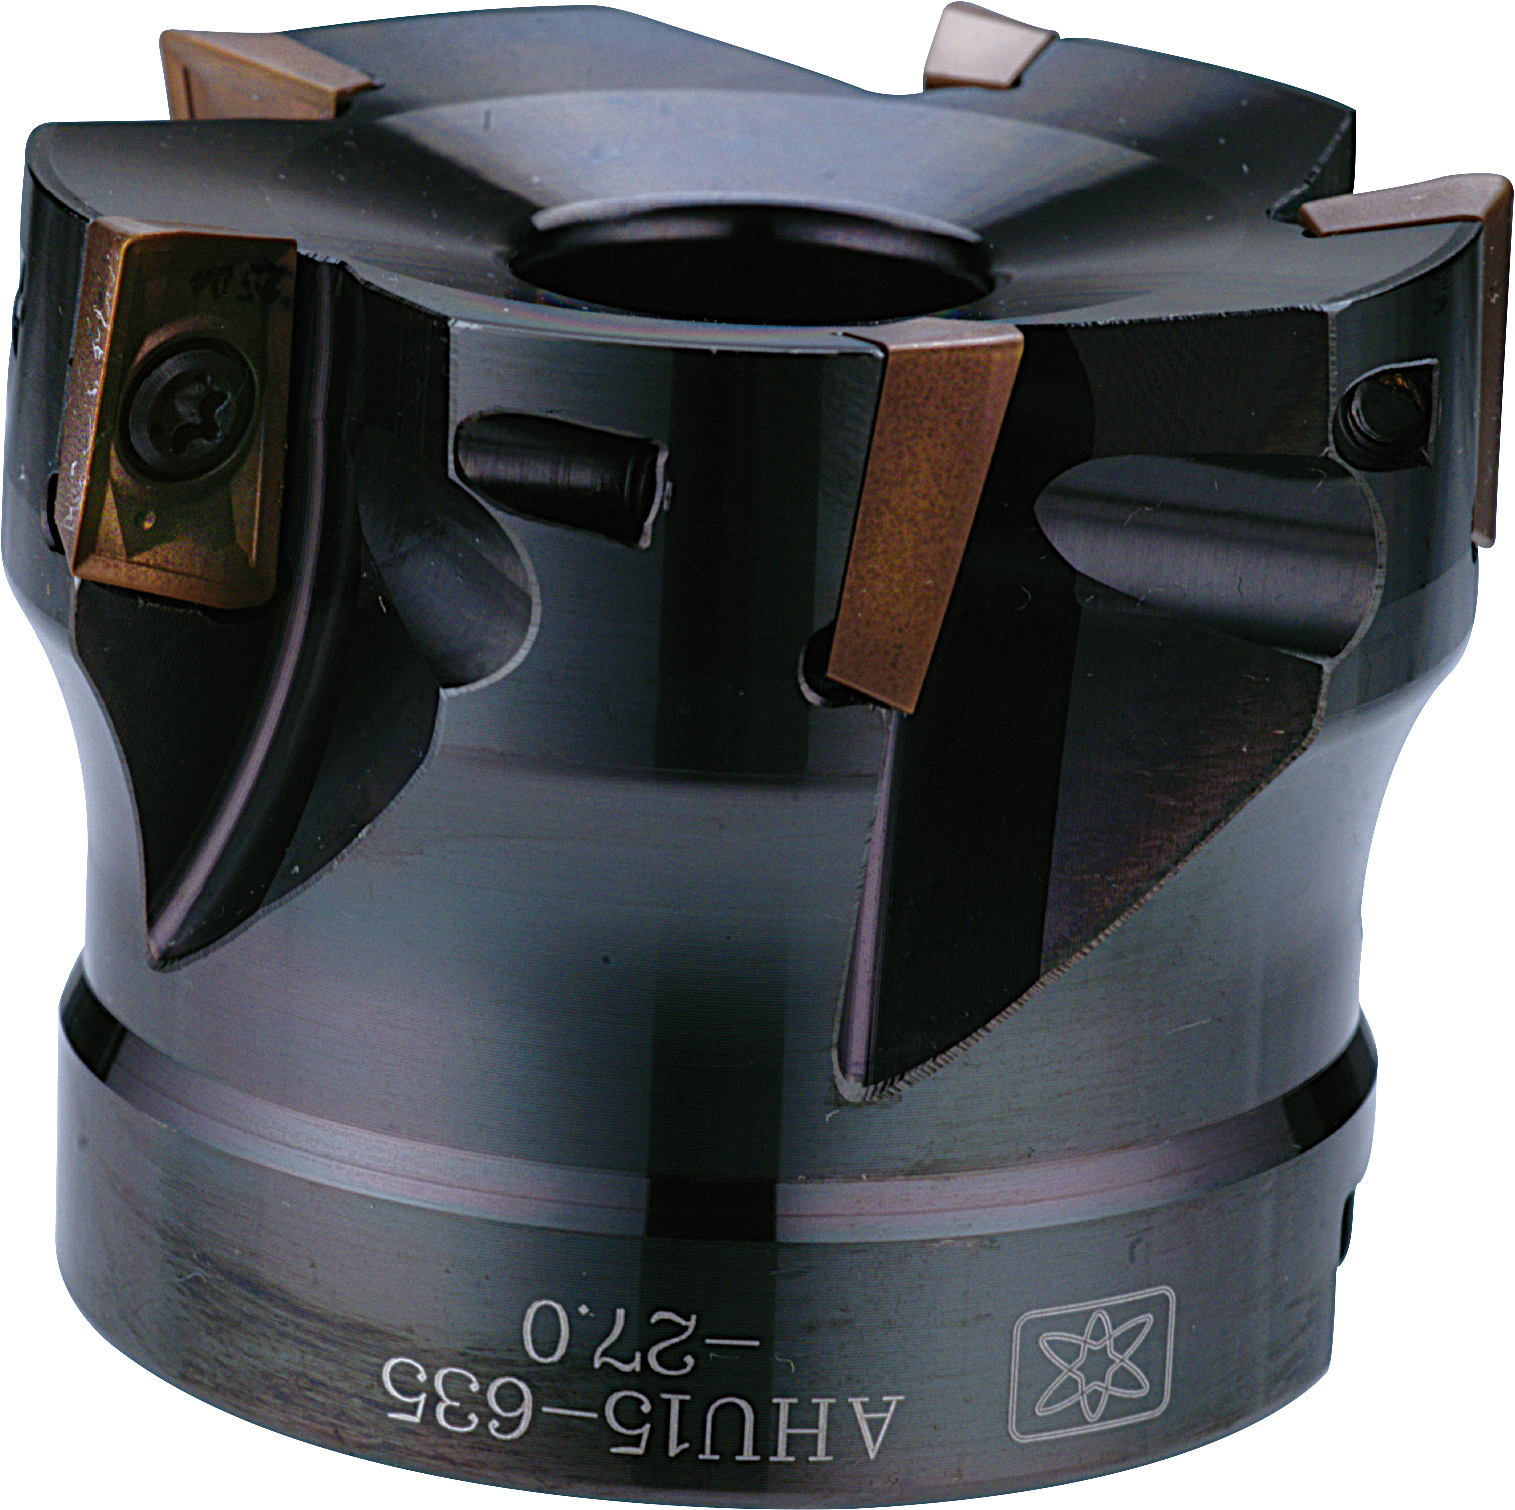 Catalog|AHU (JDMT1003/JDMT1505) Shoulder Milling- arbor mill